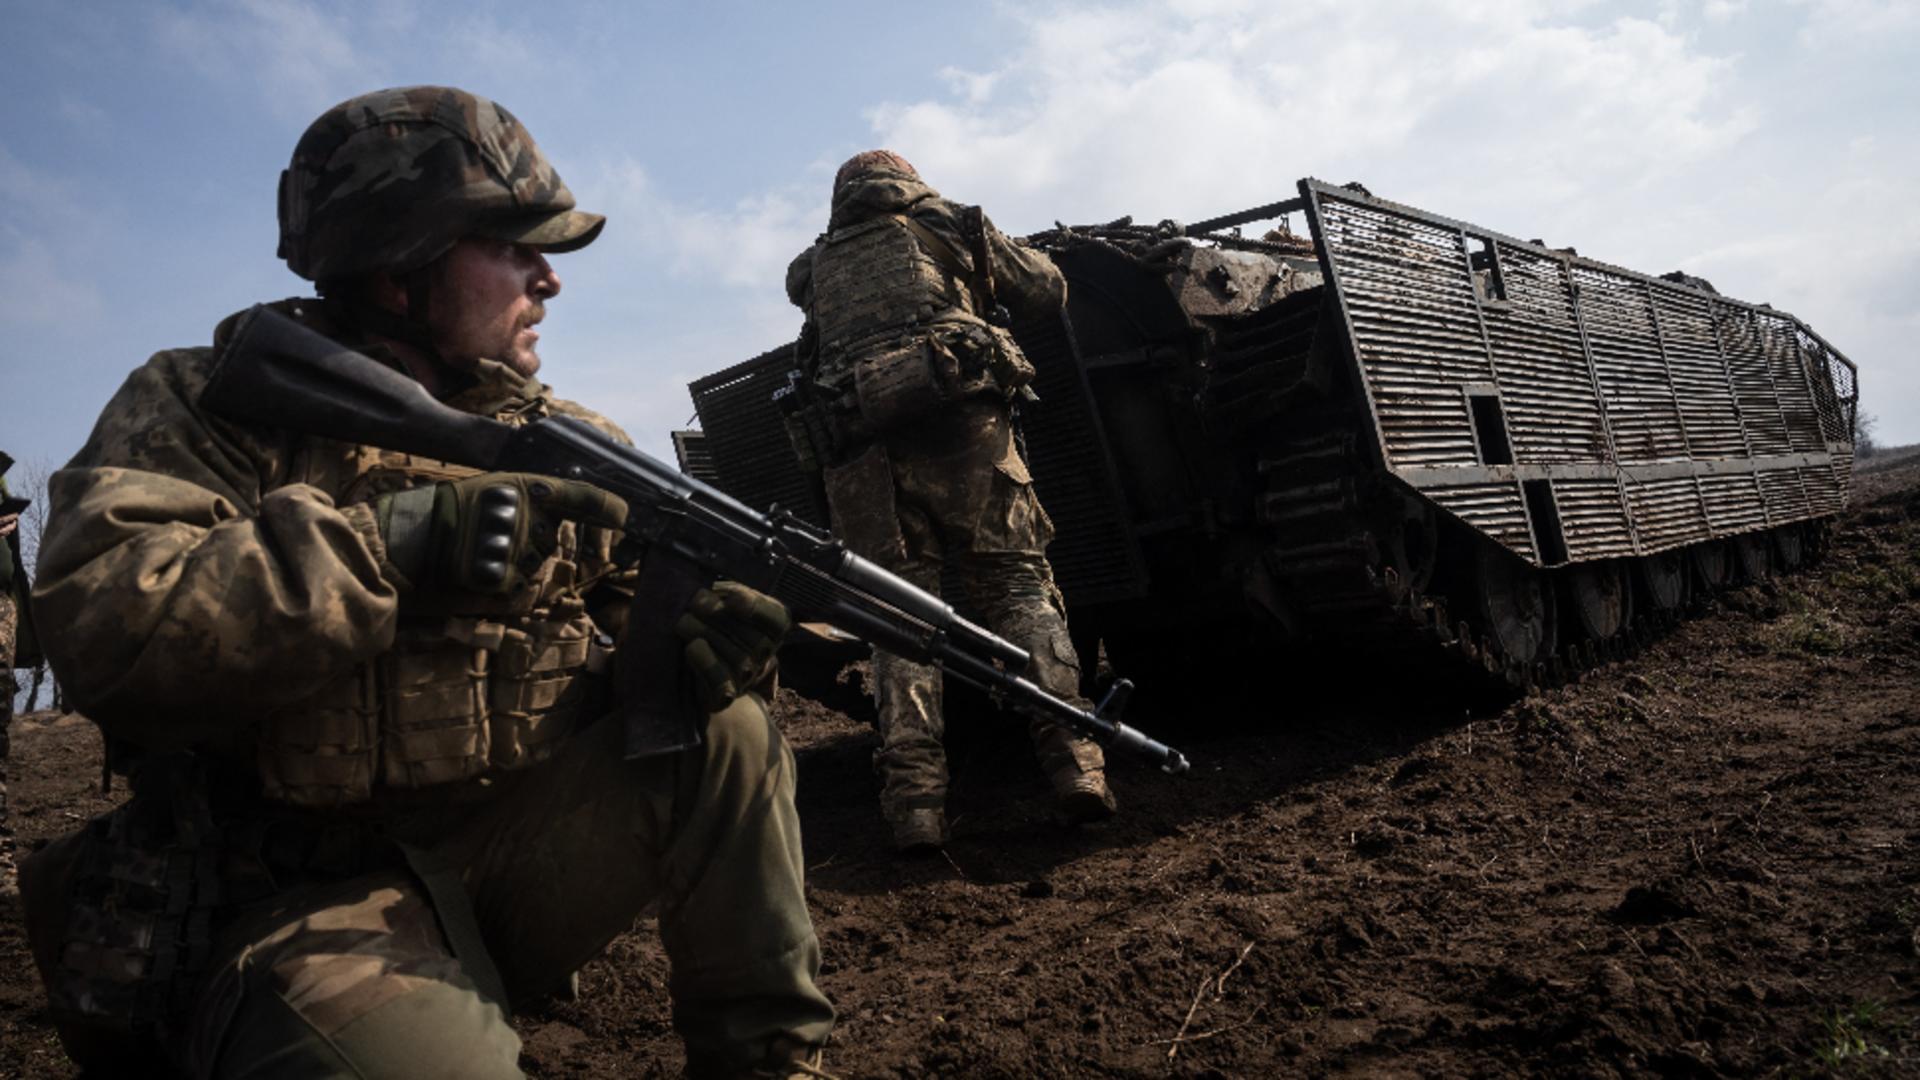 Război în Ucraina, ziua 763.  Situație “dificilă” pentru trupele Kievului în Donbas. Drone kamikaze, doborâte deasupra unor regiuni ucrainene – LIVE TEXT